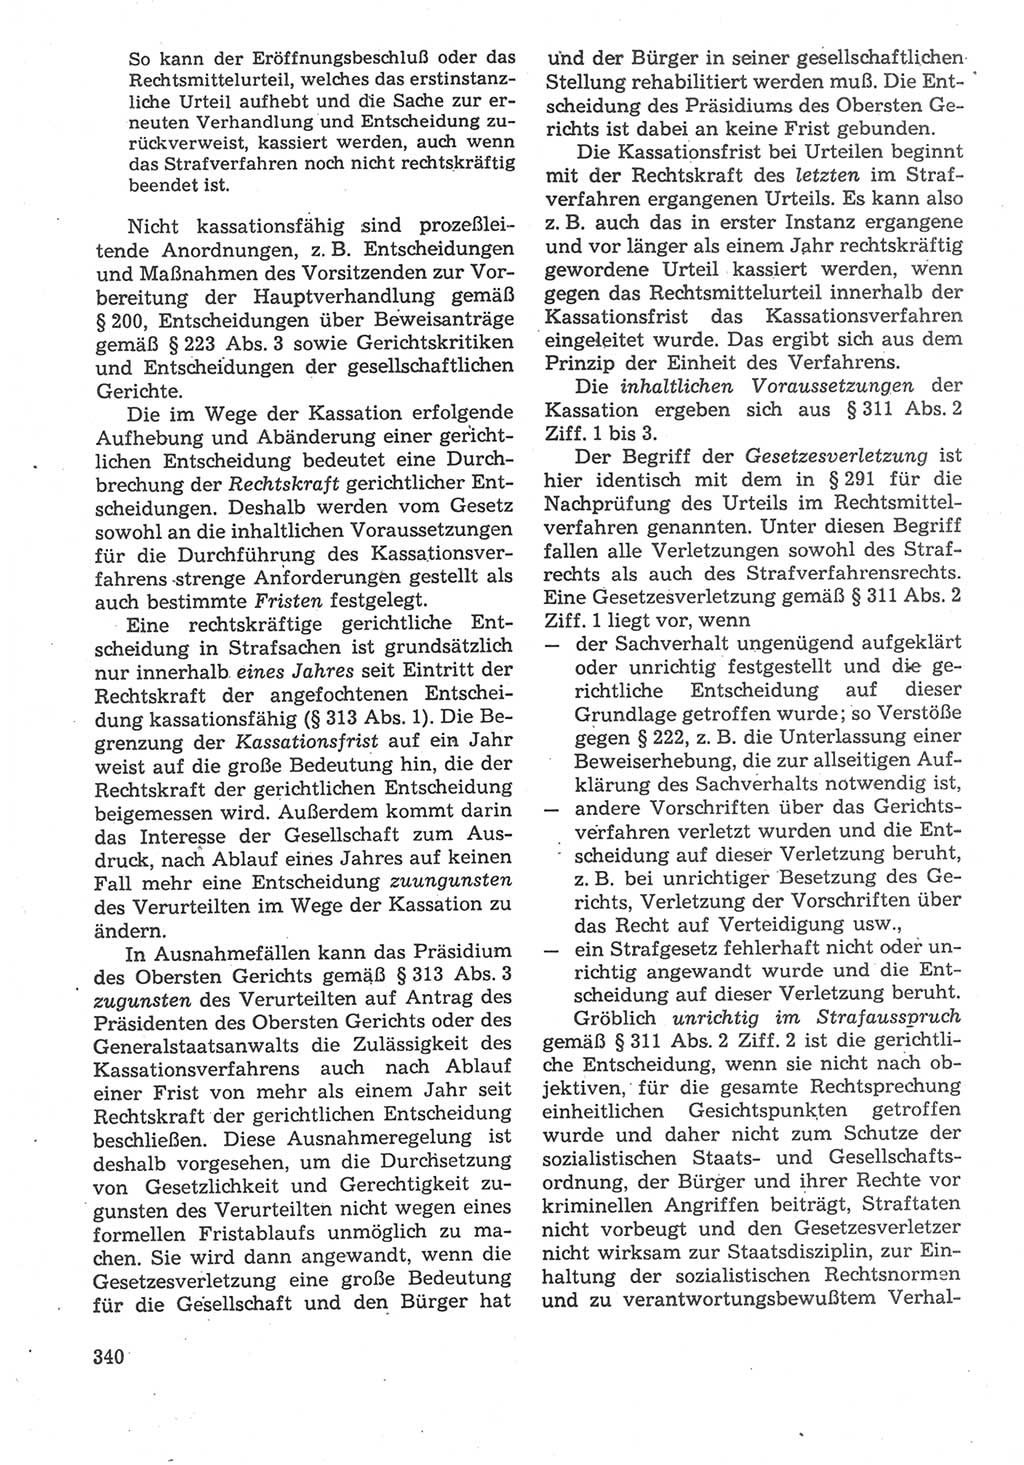 Strafverfahrensrecht [Deutsche Demokratische Republik (DDR)], Lehrbuch 1987, Seite 340 (Strafverf.-R. DDR Lb. 1987, S. 340)